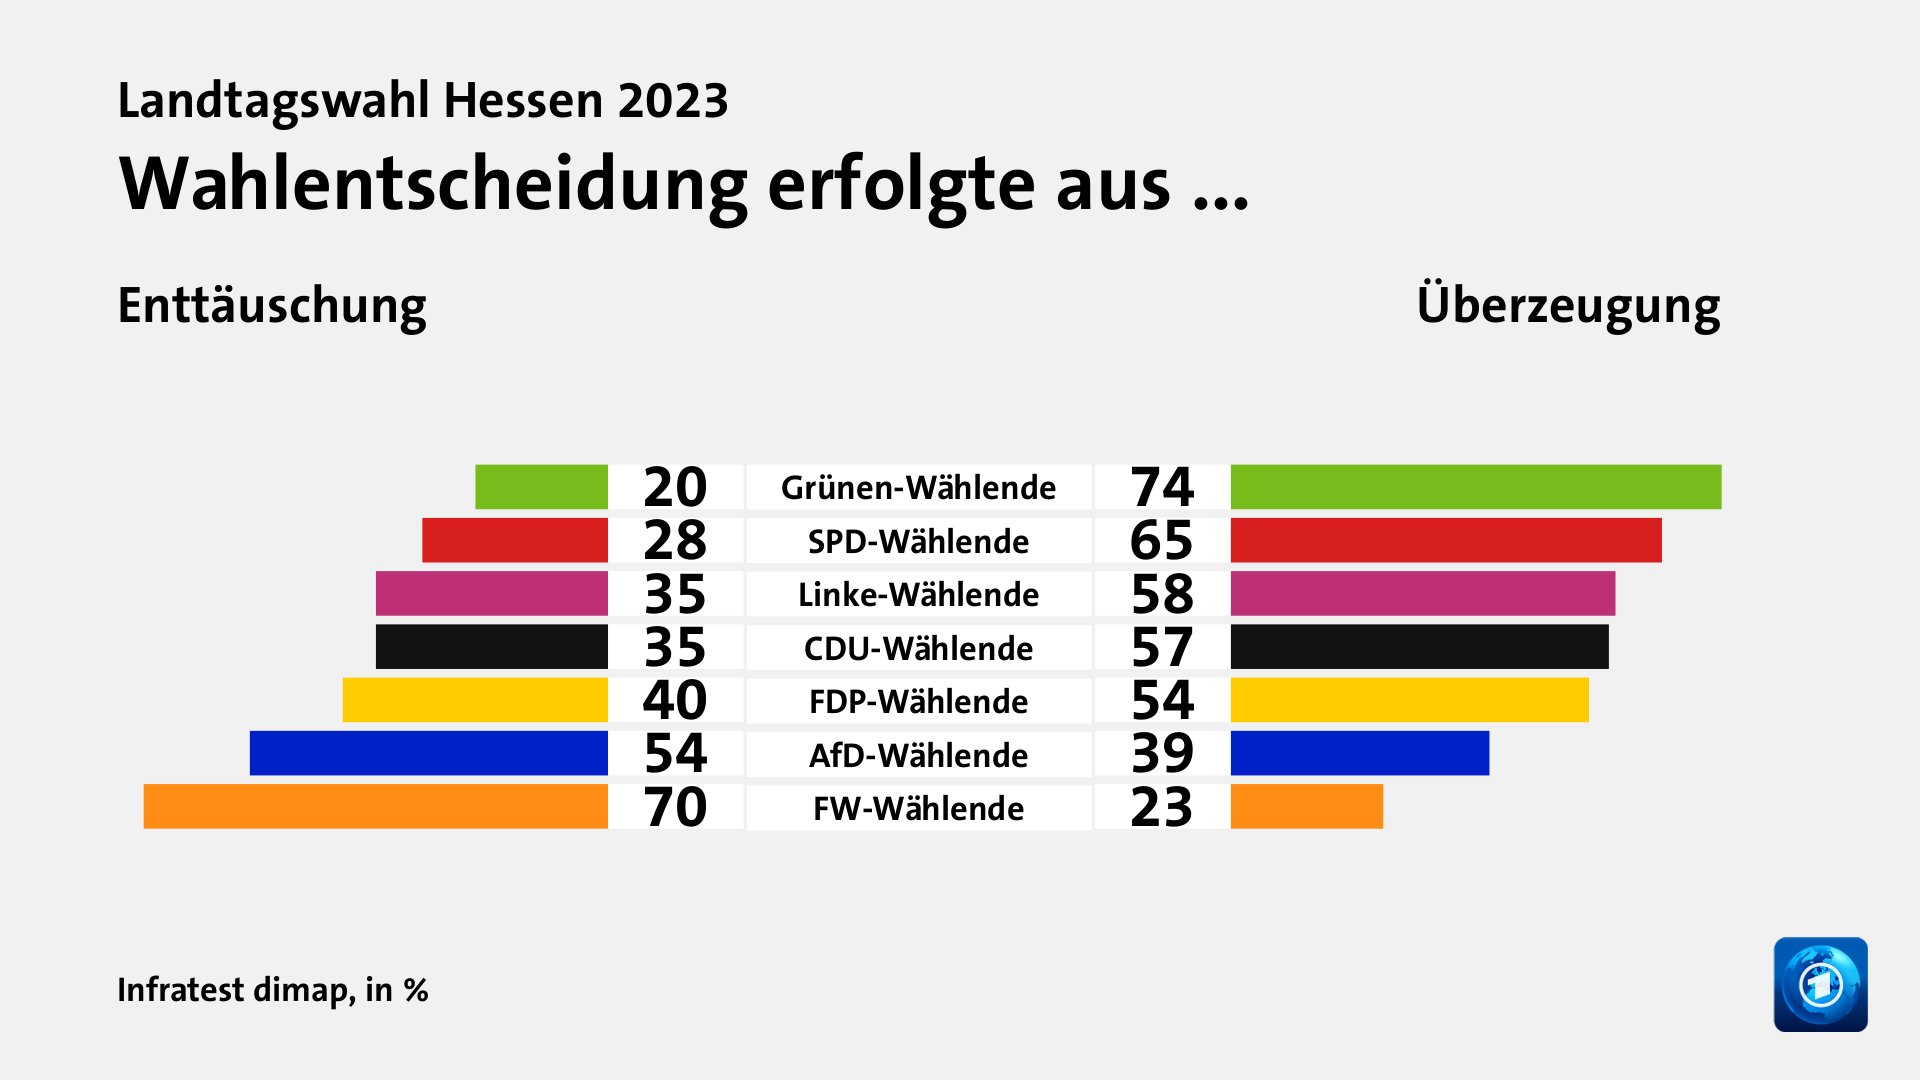 Wahlentscheidung erfolgte aus ... (in %) Grünen-Wählende: Enttäuschung 20, Überzeugung 74; SPD-Wählende: Enttäuschung 28, Überzeugung 65; Linke-Wählende: Enttäuschung 35, Überzeugung 58; CDU-Wählende: Enttäuschung 35, Überzeugung 57; FDP-Wählende: Enttäuschung 40, Überzeugung 54; AfD-Wählende: Enttäuschung 54, Überzeugung 39; FW-Wählende: Enttäuschung 70, Überzeugung 23; Quelle: Infratest dimap